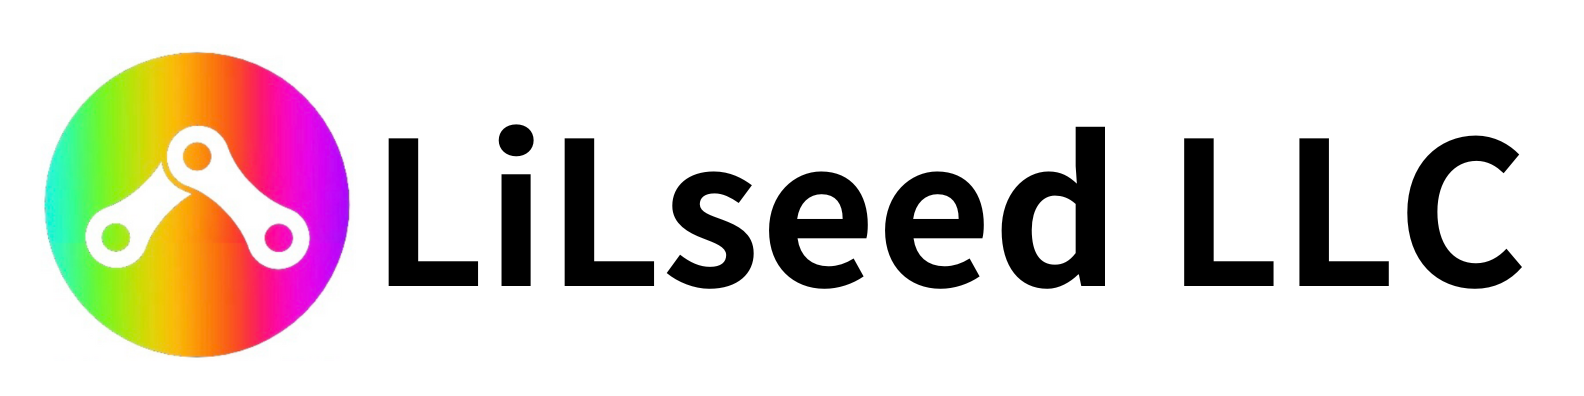 LiLseed合同会社(LiLseed LLC)